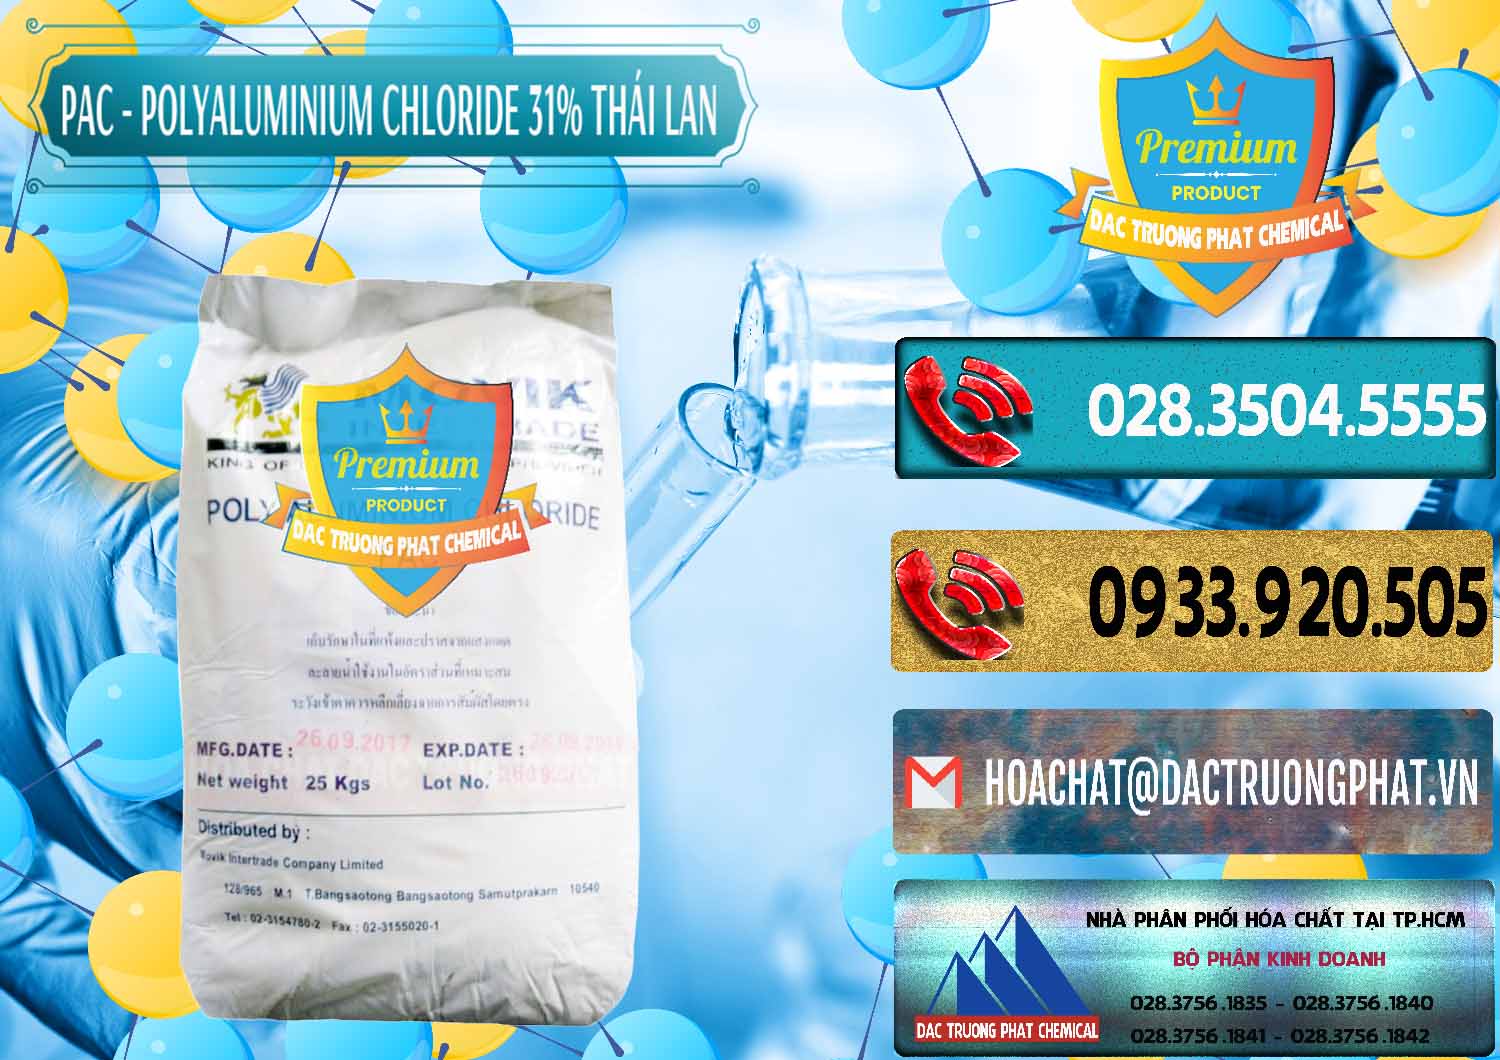 Cty chuyên phân phối & bán PAC - Polyaluminium Chloride 31% Thái Lan Thailand - 0469 - Công ty phân phối _ nhập khẩu hóa chất tại TP.HCM - hoachatdetnhuom.com